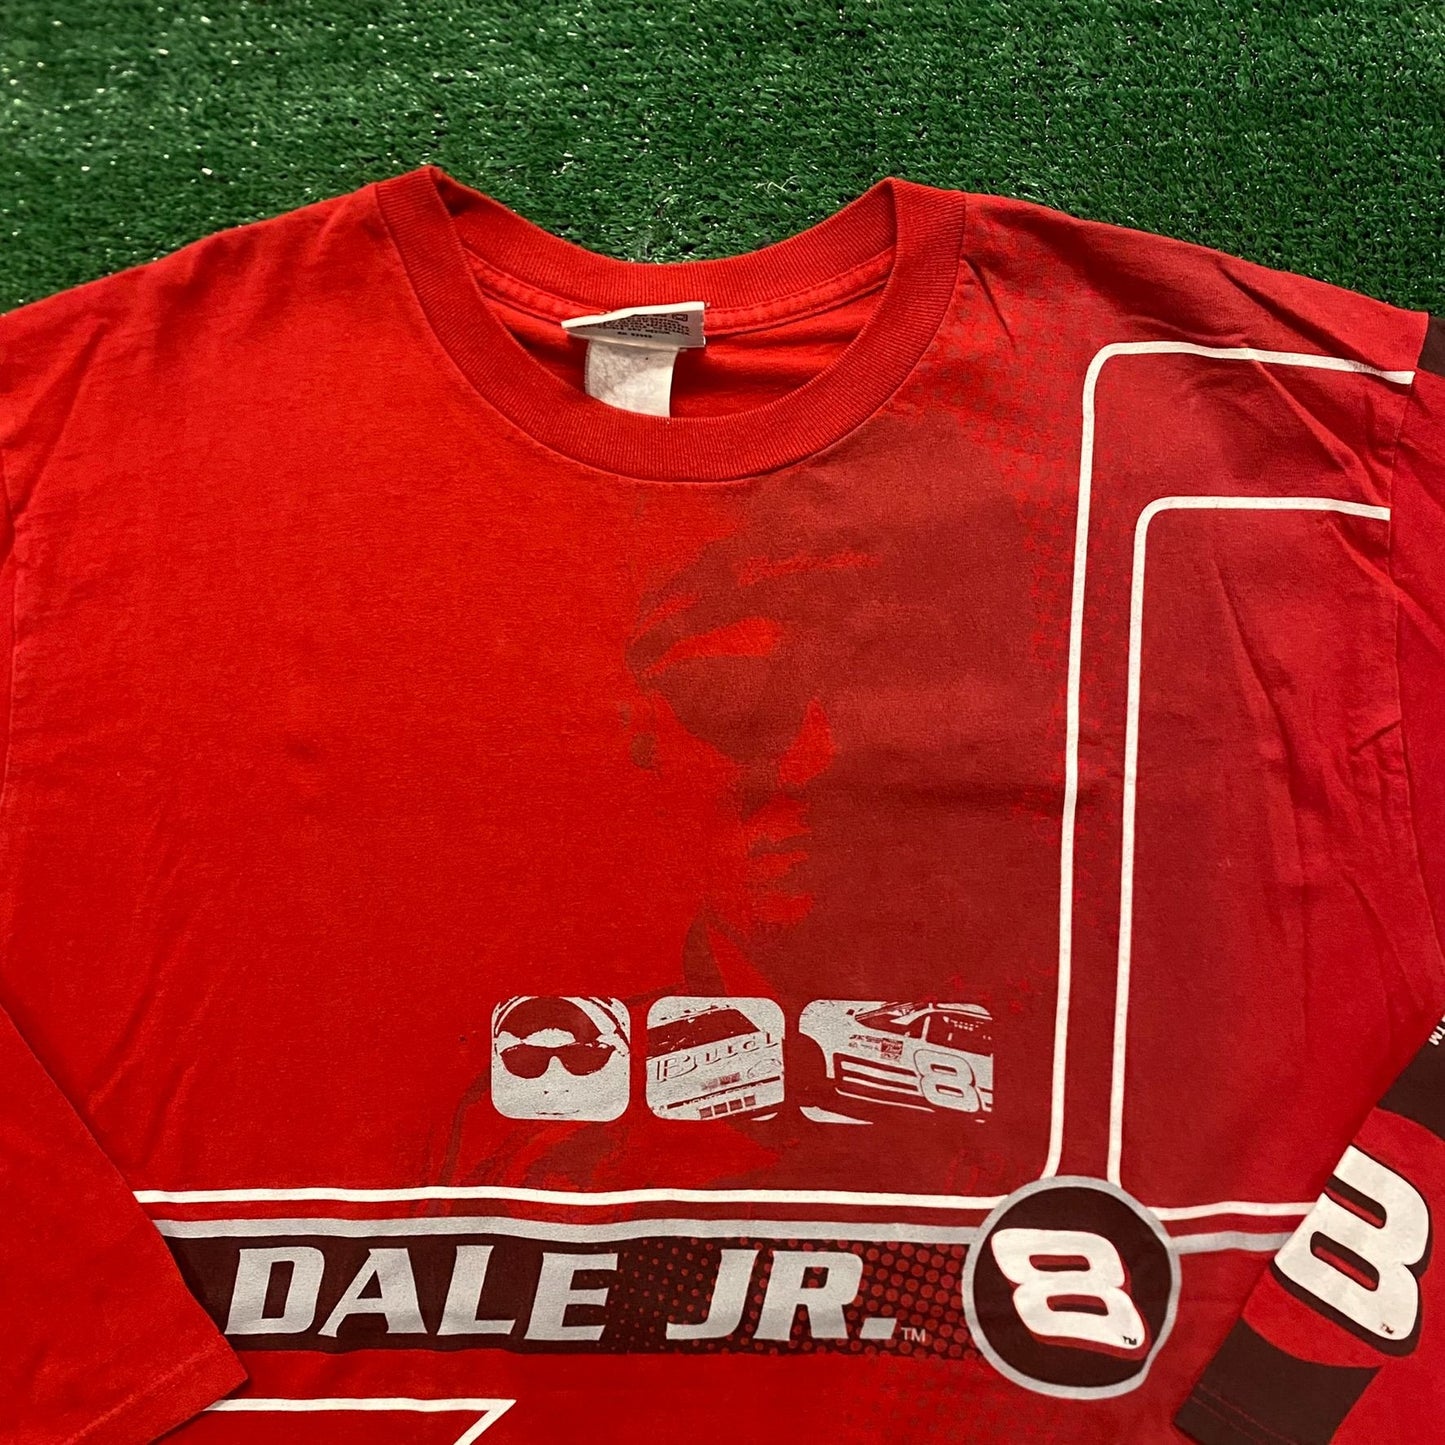 Dale Earnhardt Budweiser Vintage NASCAR Racing T-Shirt